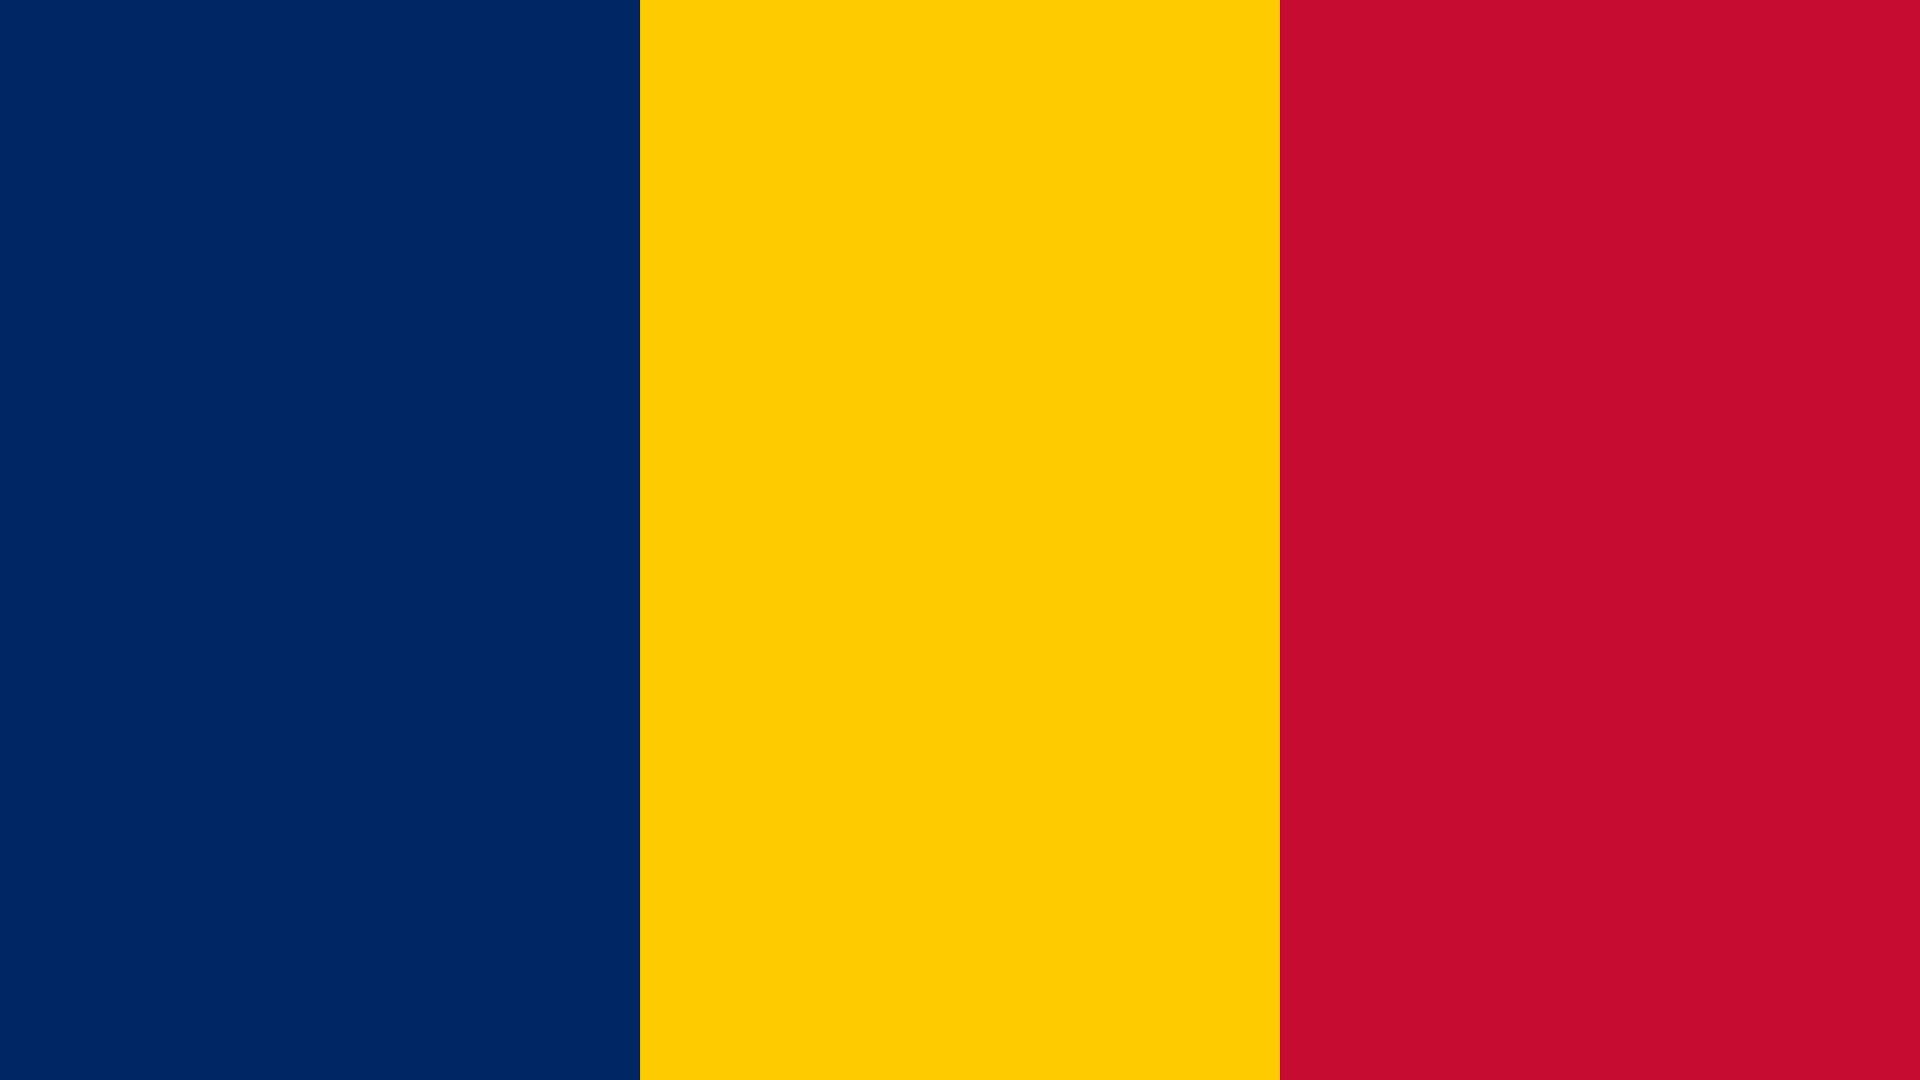 A bandeira combina com as cores da bandeira da França com algumas cores Pan-Africanas. O azul simboliza o céu, a esperança e a água; o amarelo, o sol e o deserto; e o vermelho, o progresso, a unidade e o sacrifício.